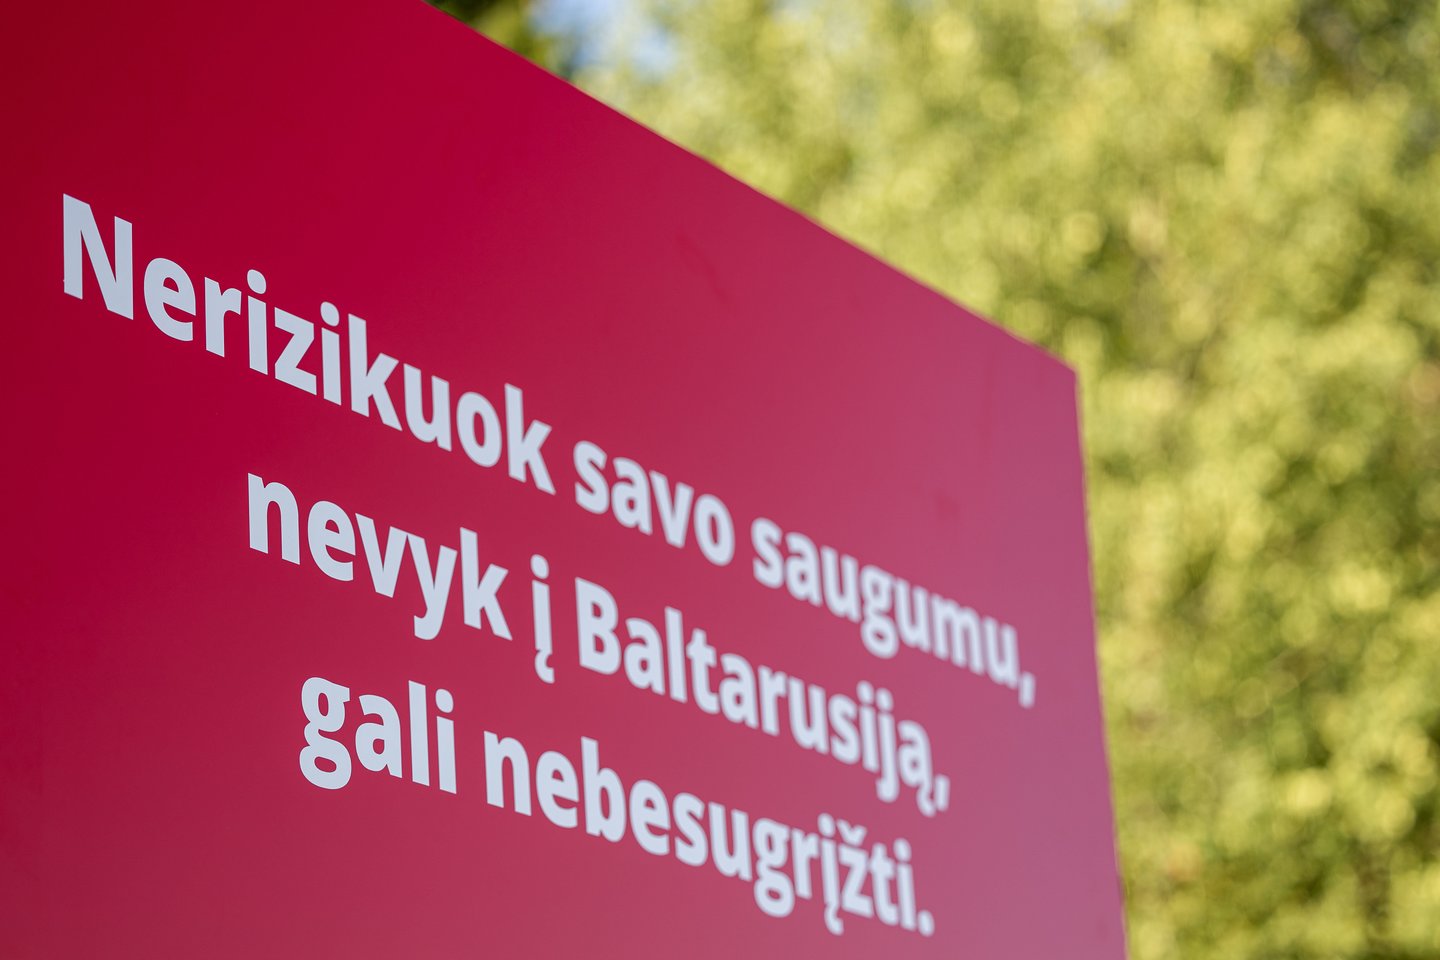 Lietuvos politikai ir institucijų atstovai griežtai perspėja nevykti į Baltarusiją.<br>Ž.Gedvilos (ELTA) nuotr.